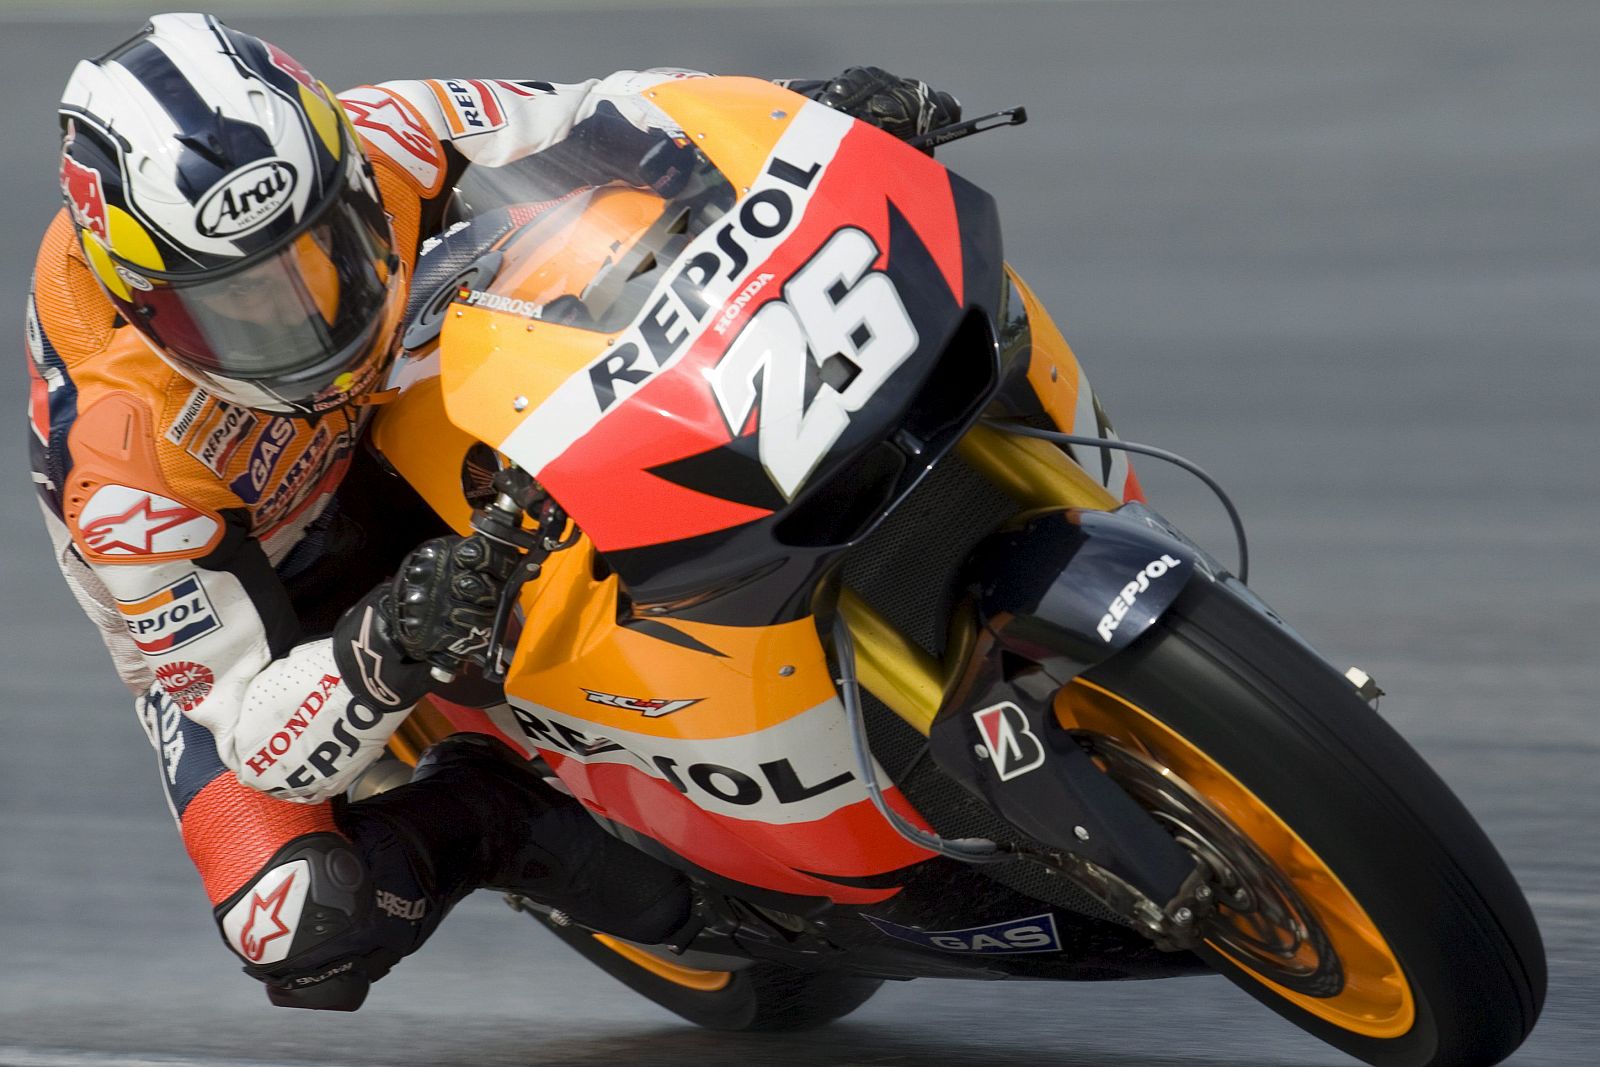 El piloto español de Moto GP Dani Pedrosa del equipo Repsol Honda toma una curva durante la segunda jornada de las pruebas de pretemporada en Sepang.